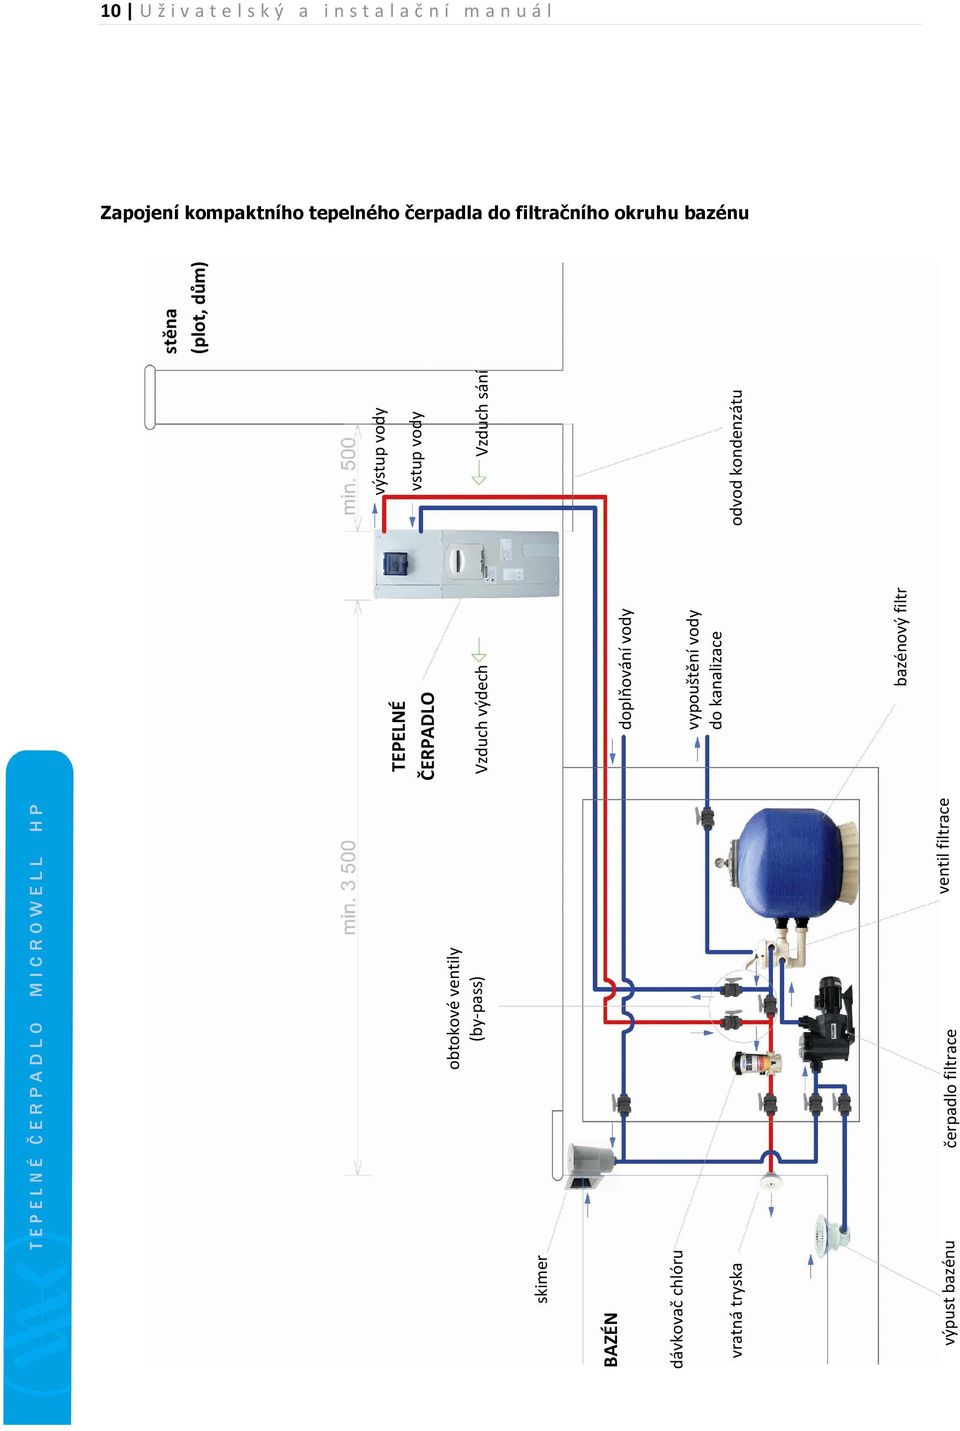 TEPELNÉ ČERPADLO. Návod na použití a instalaci HP 900 COMPACT & HP 1200  COMPACT. pro ohřev vody venkovních bazénů - PDF Stažení zdarma